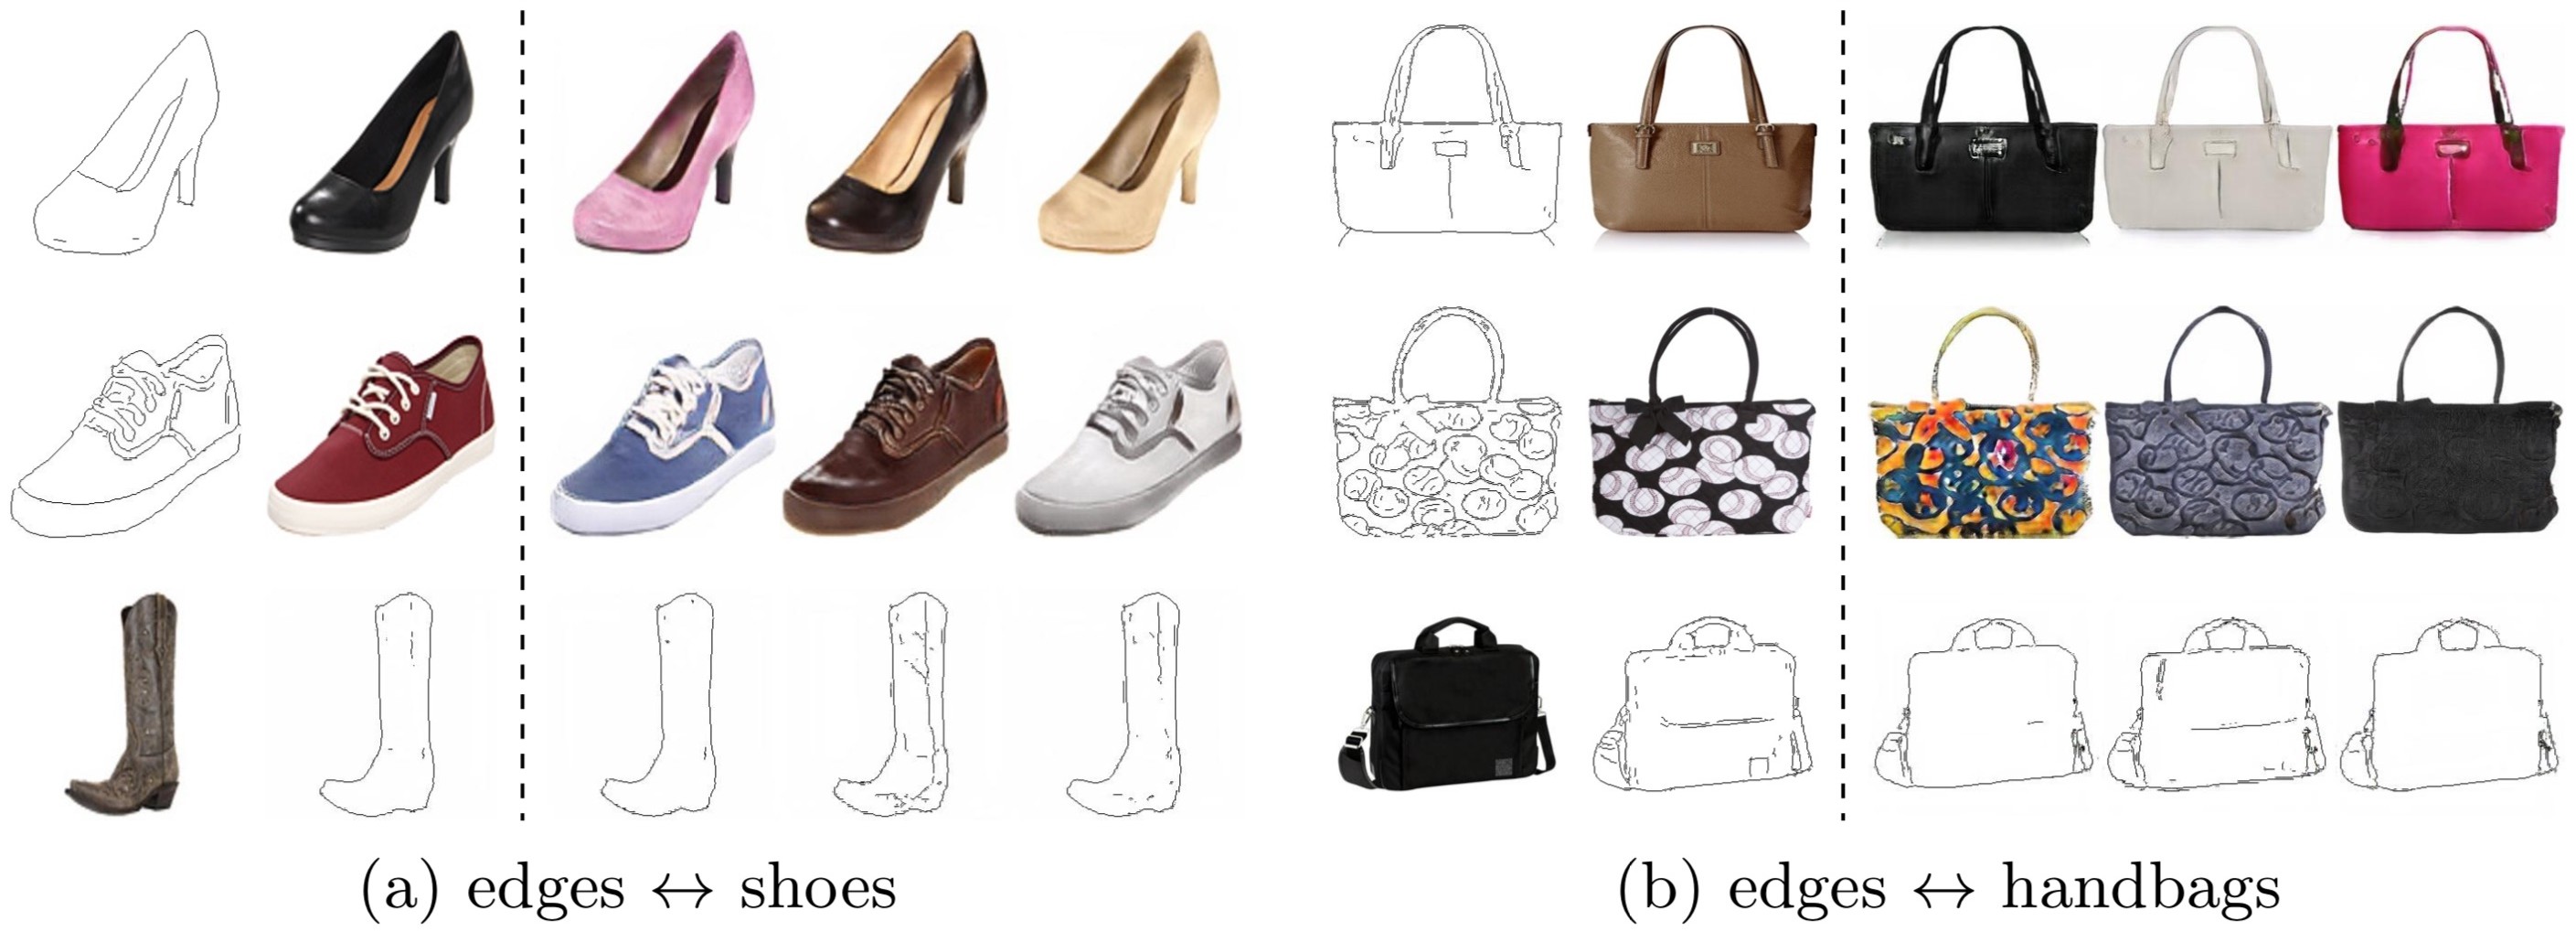 edges2shoes_handbags.jpg